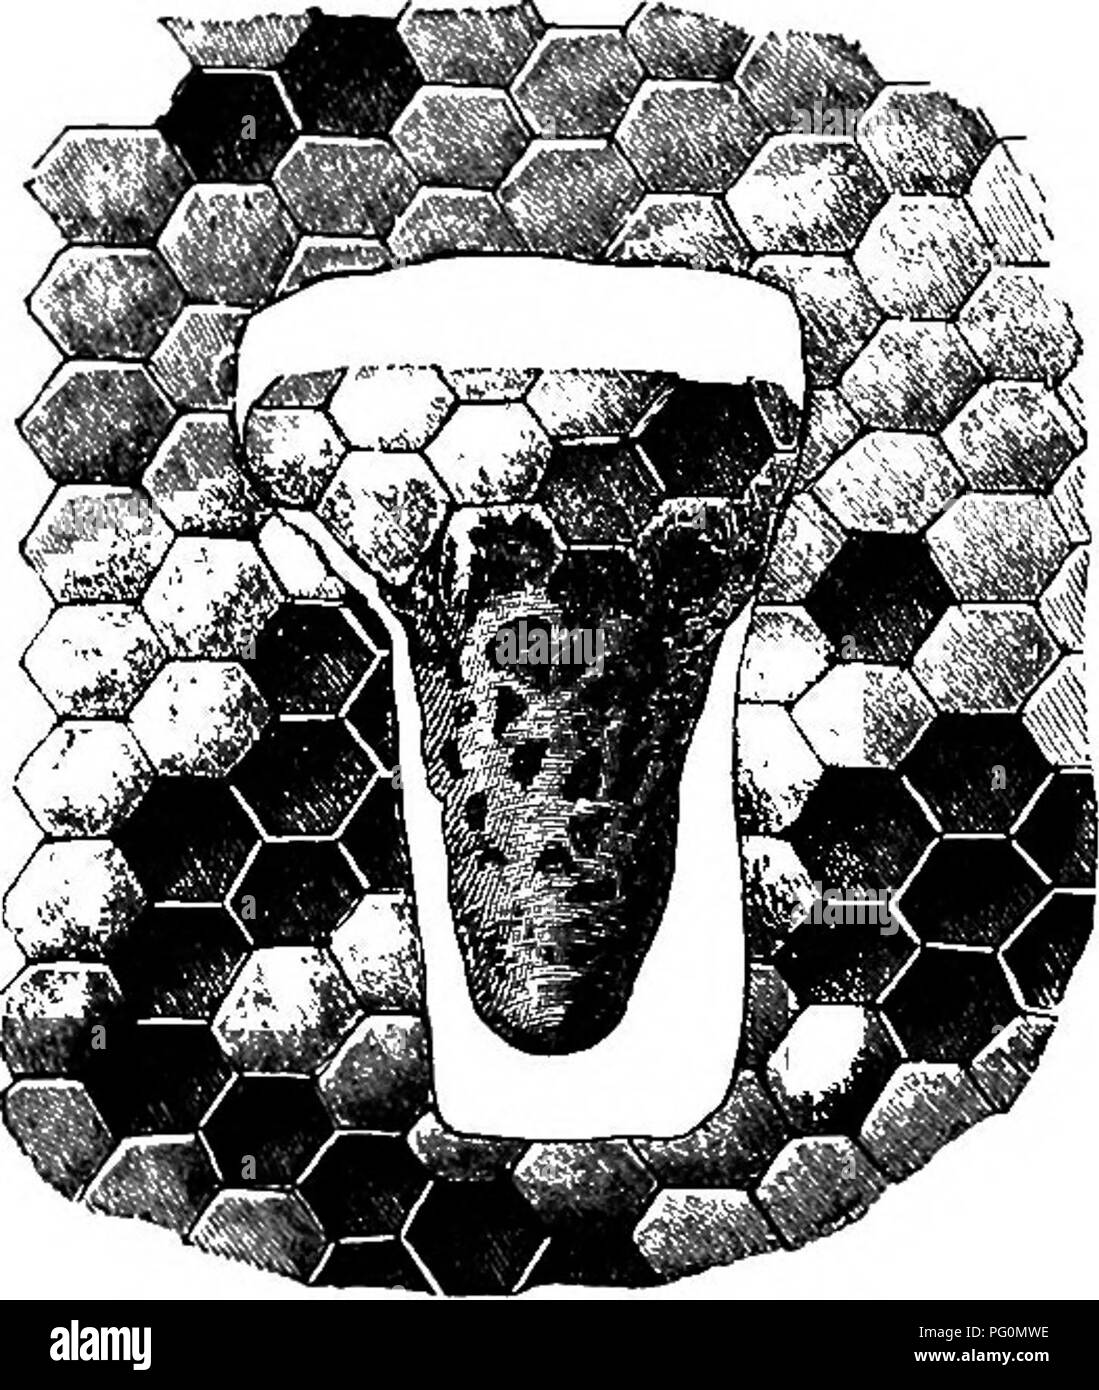 Honey Bee Queen Marking Pen - White, Dadant & Sons 1863